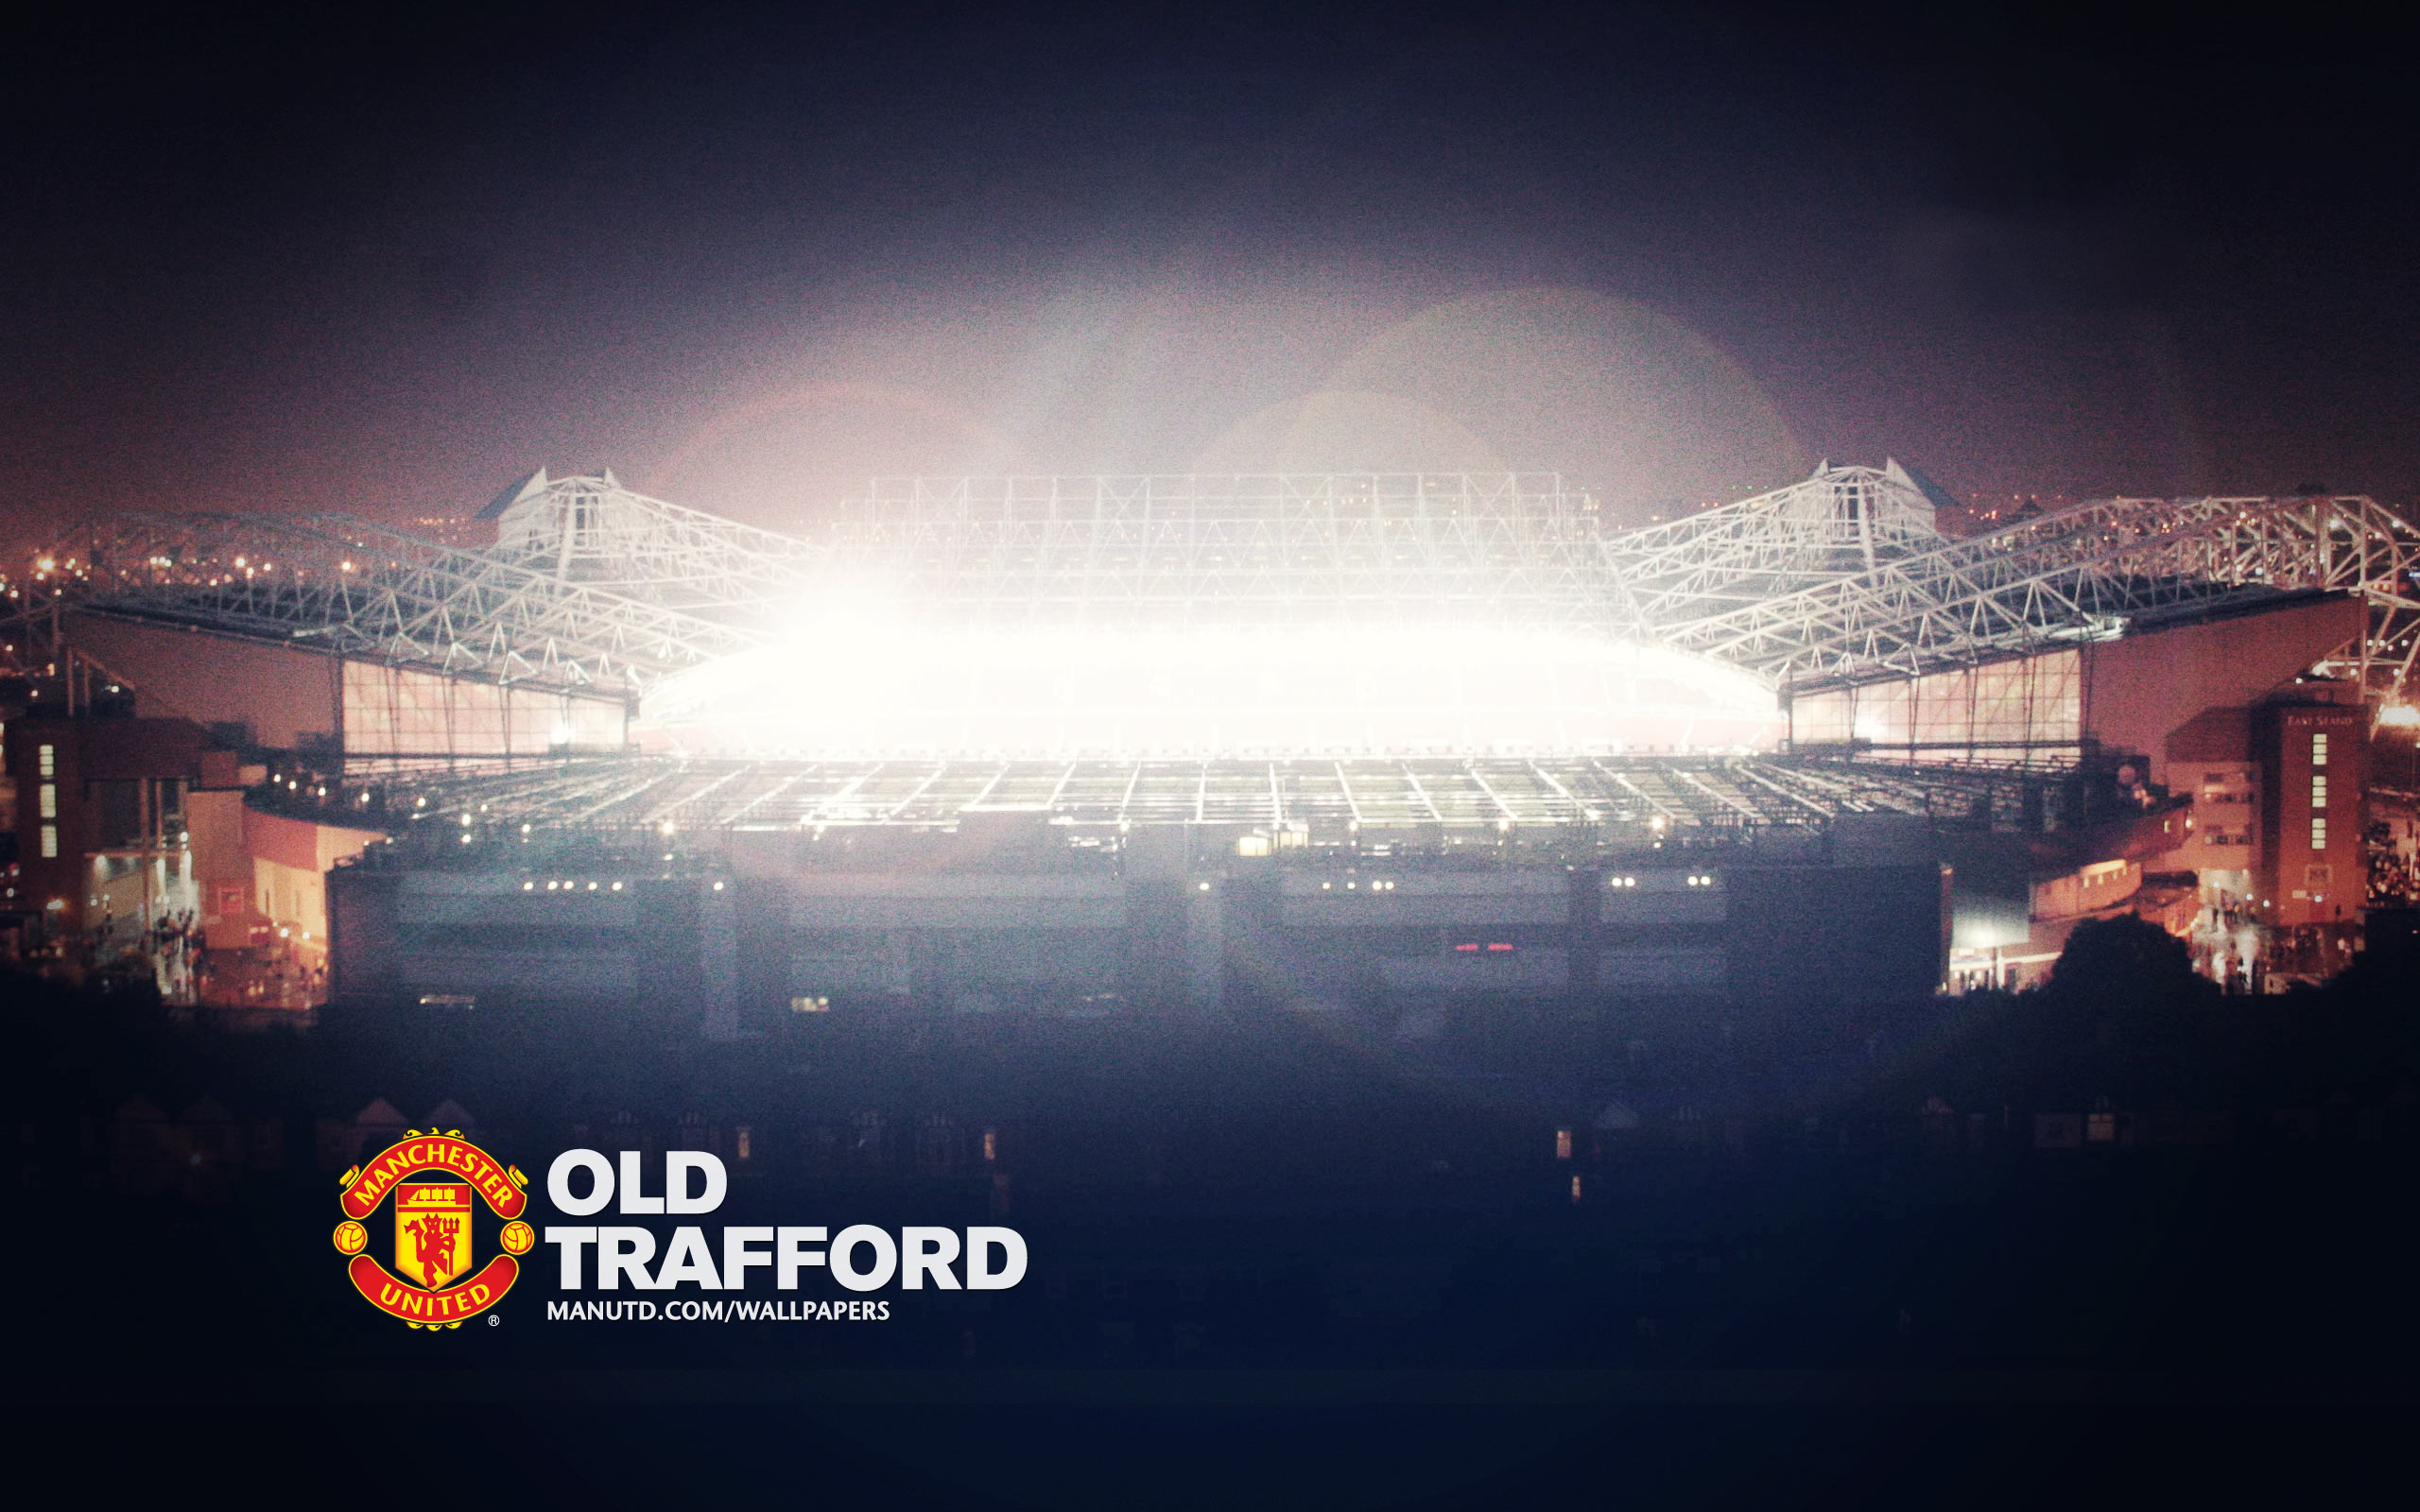 Old Trafford Stadium HD Wallpaper 1920x1080p